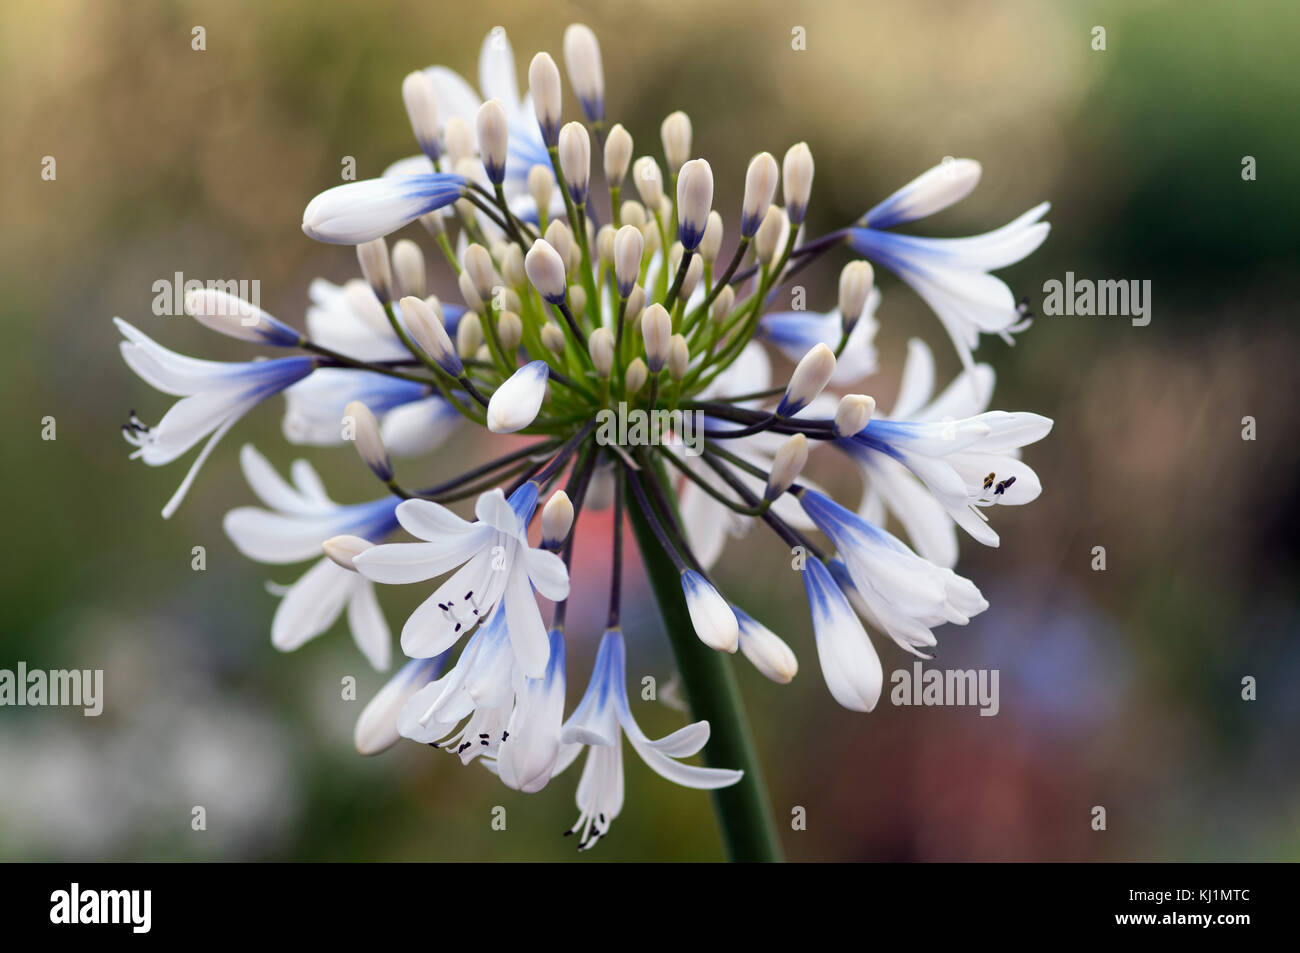 Agapanthus Queen Mum grandes flores blancas con marcas de color azul-violeta Foto de stock